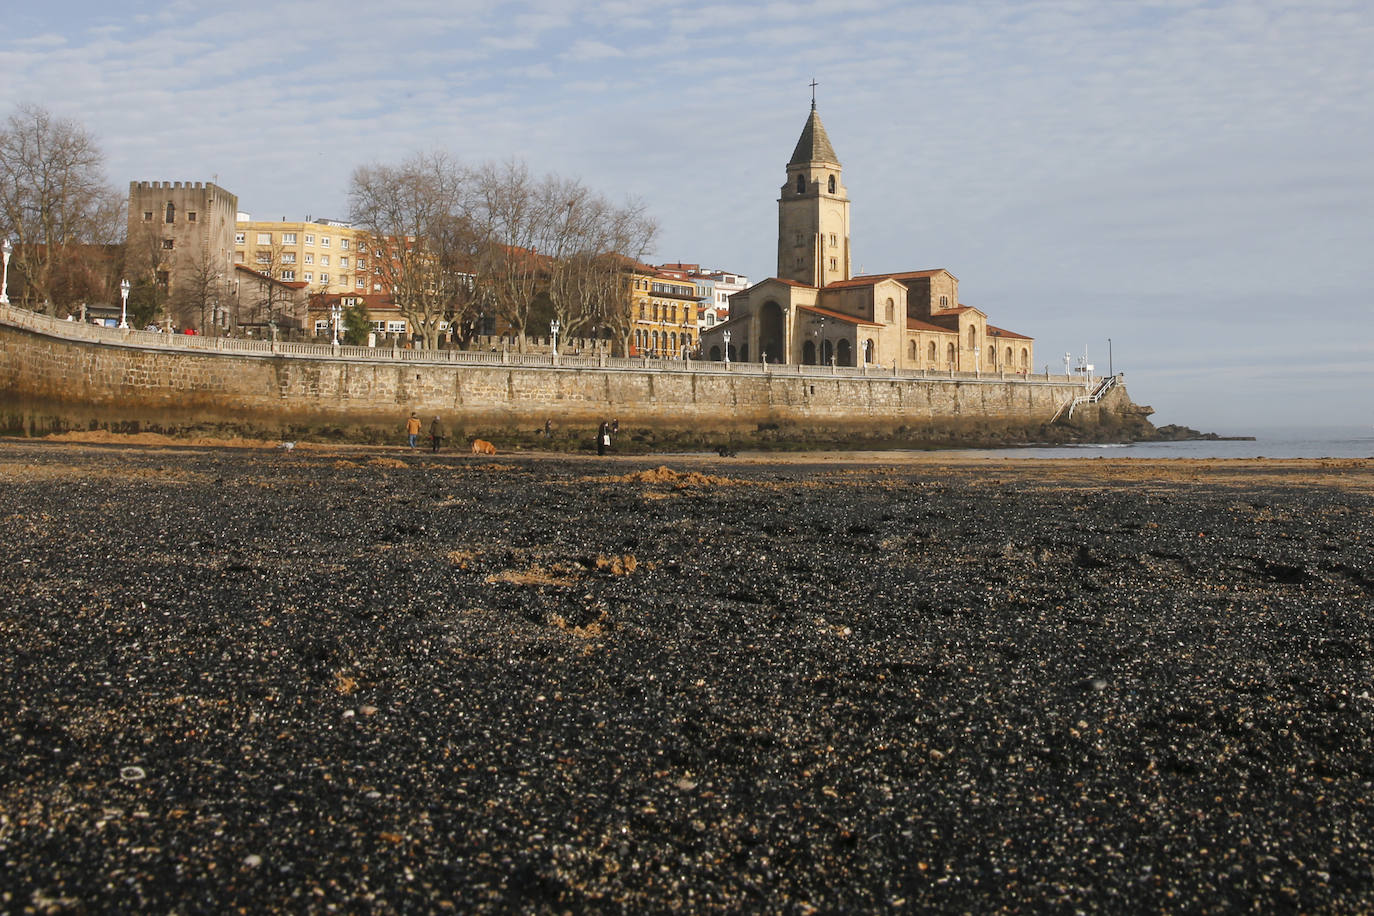 La gijonesa playa de San Lorenzo ha vuelto a amanecer cubierta de carbón, creando una estampa que sigue impactando.